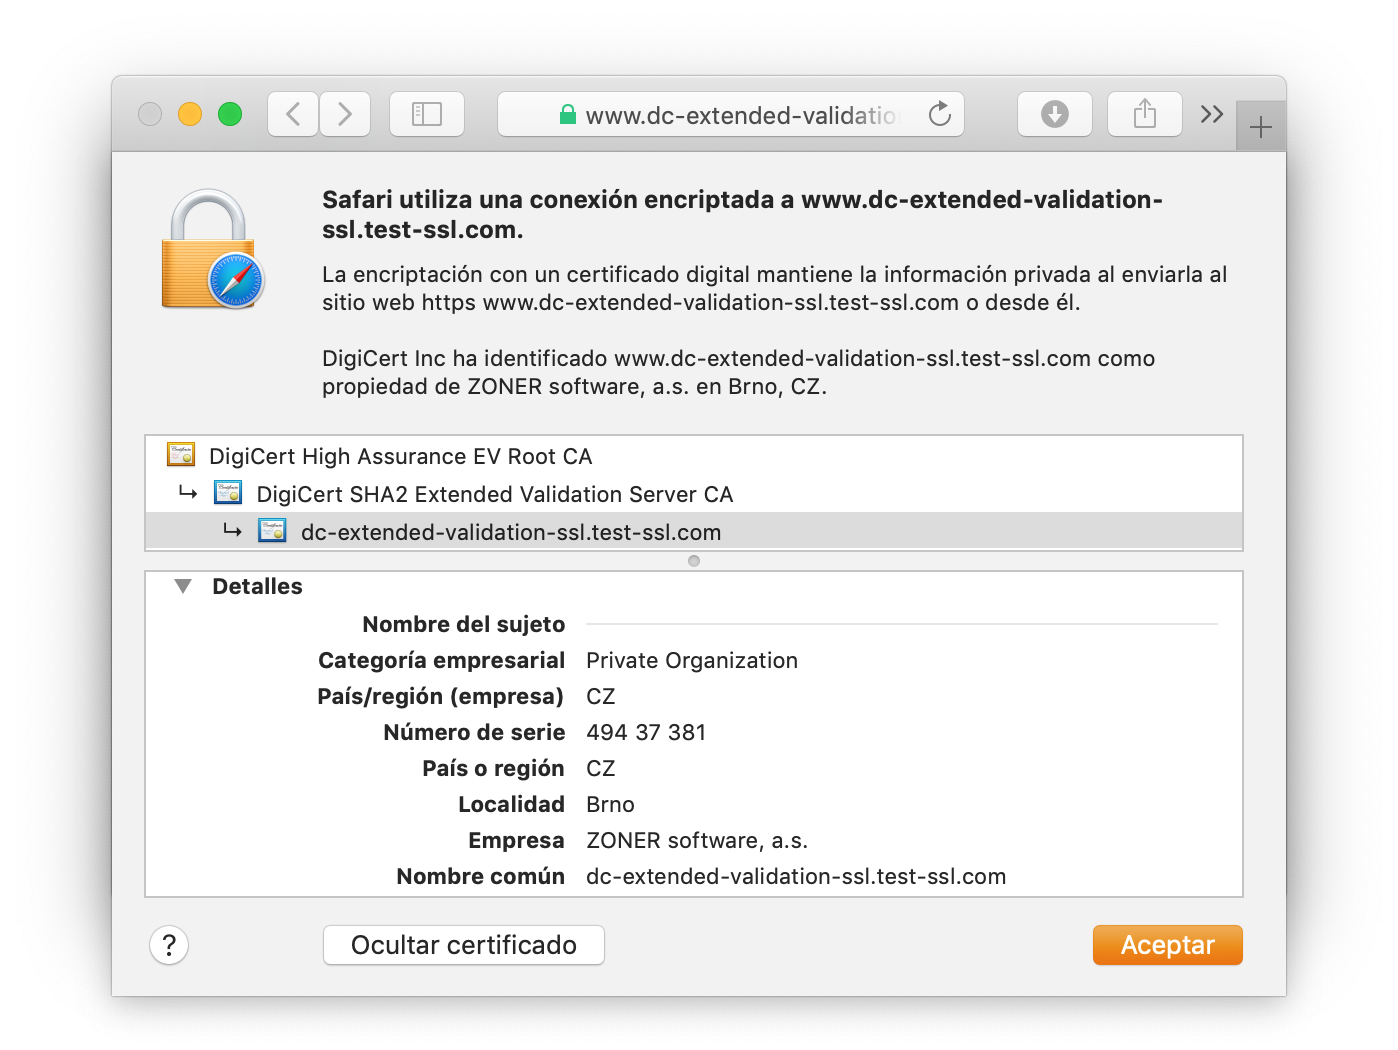 Visualización del certificado DigiCert Extended Validation SSL en el navegador